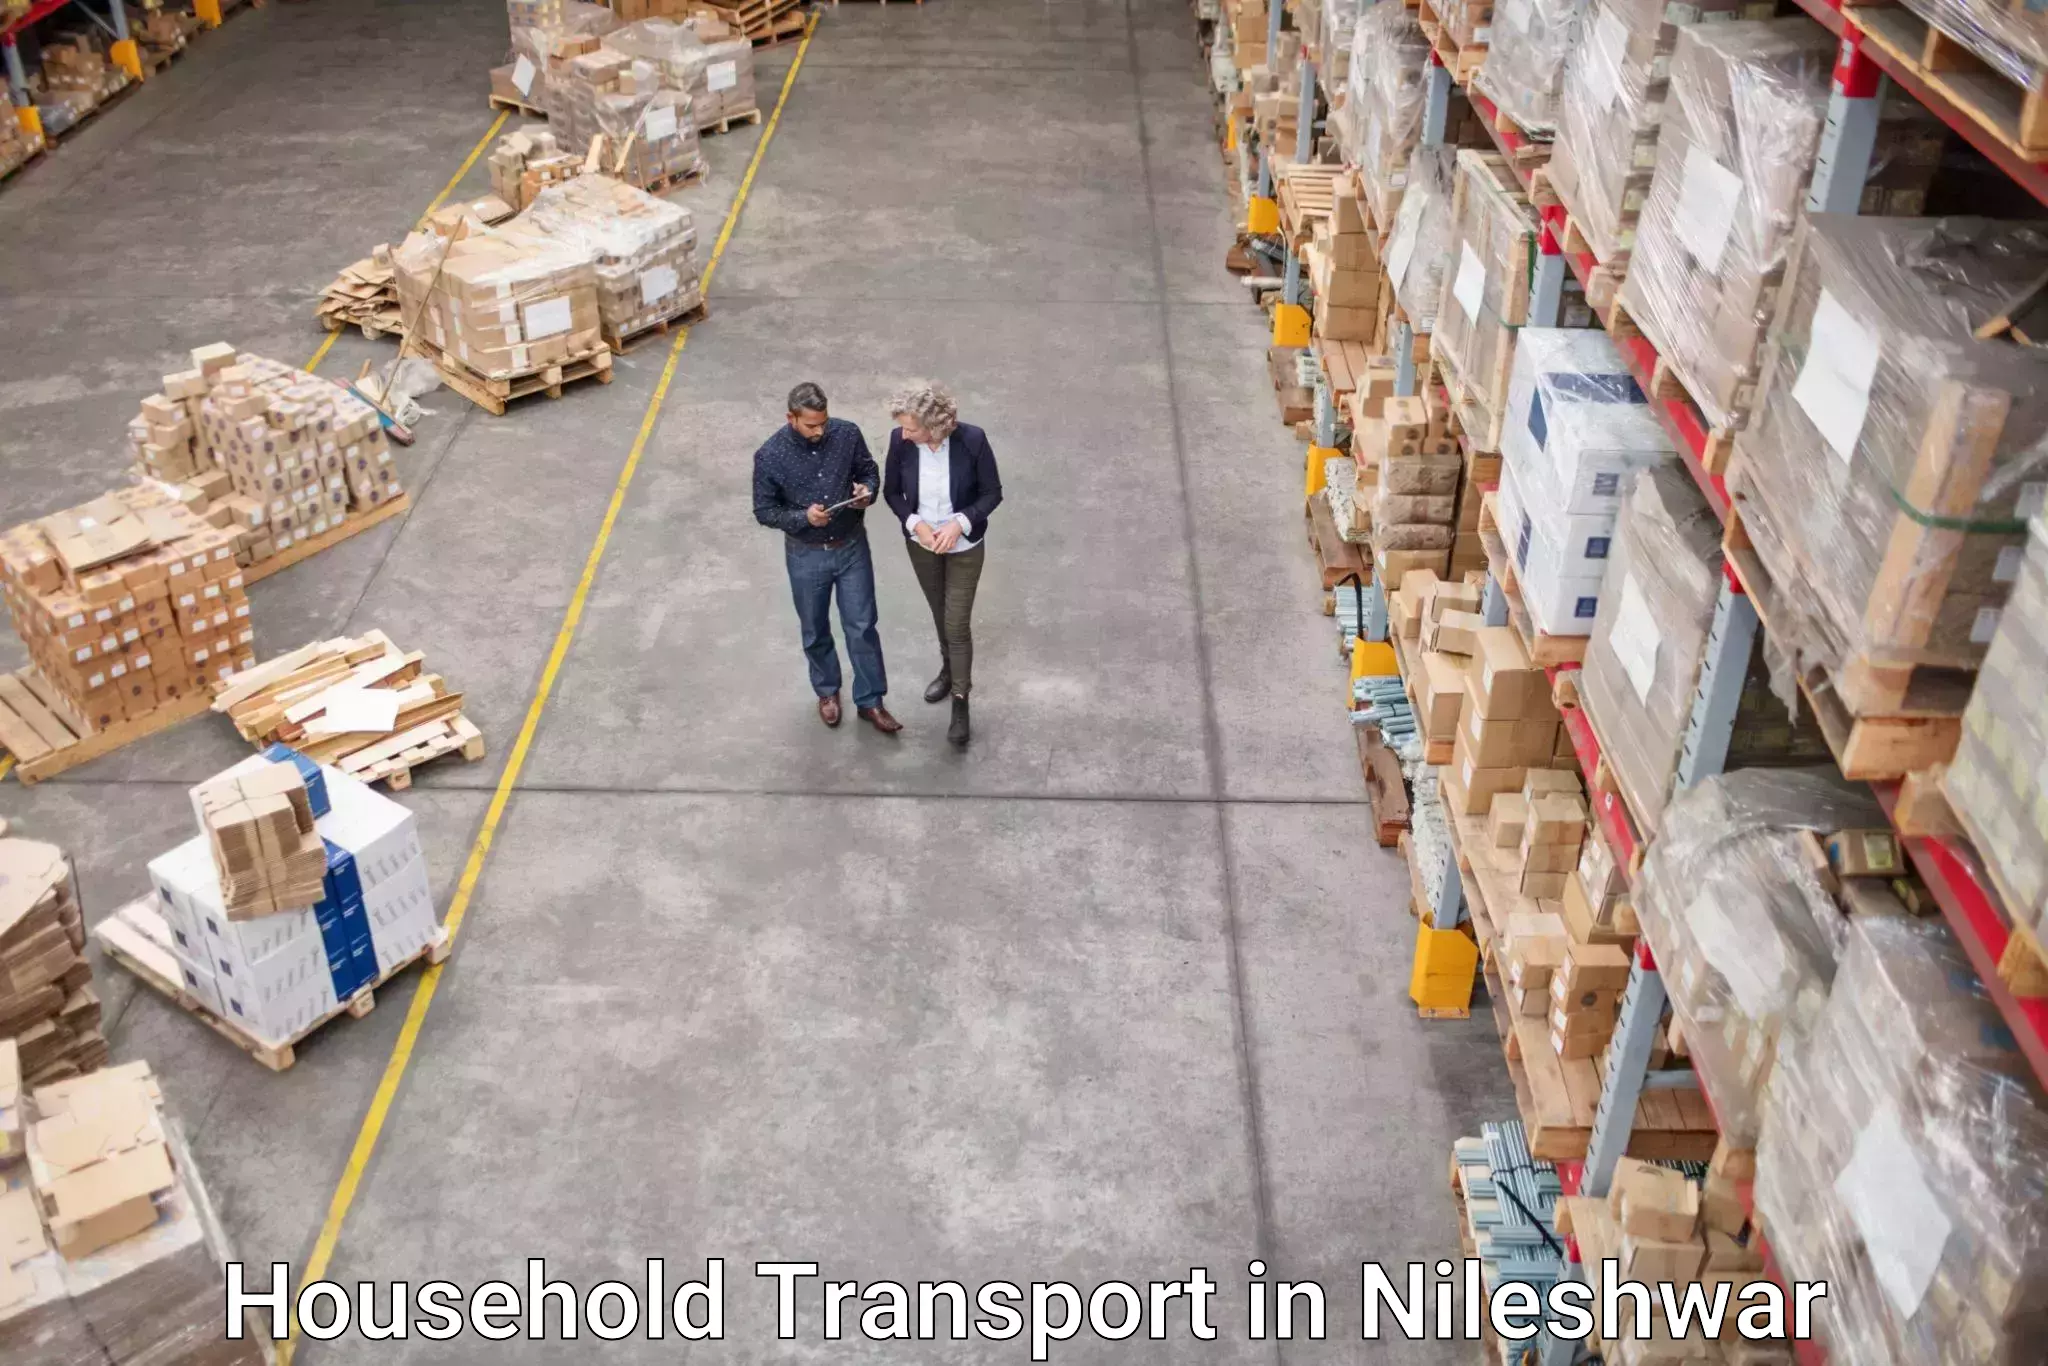 Household goods transporters in Nileshwar